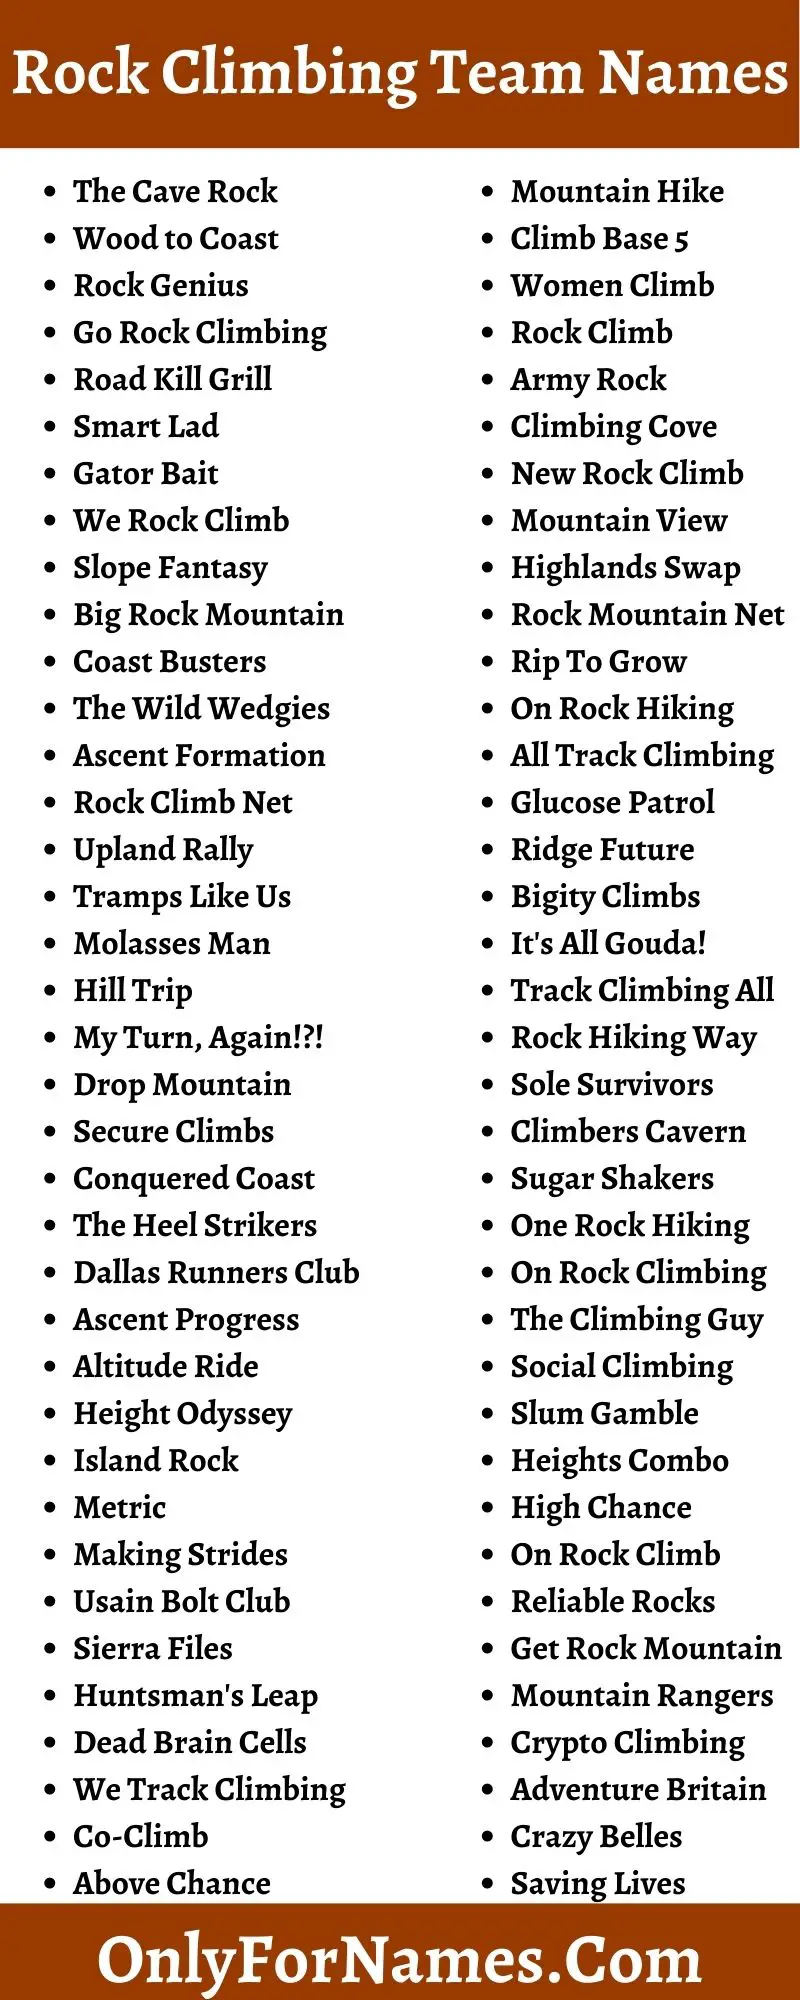 Rock Climbing Team Names